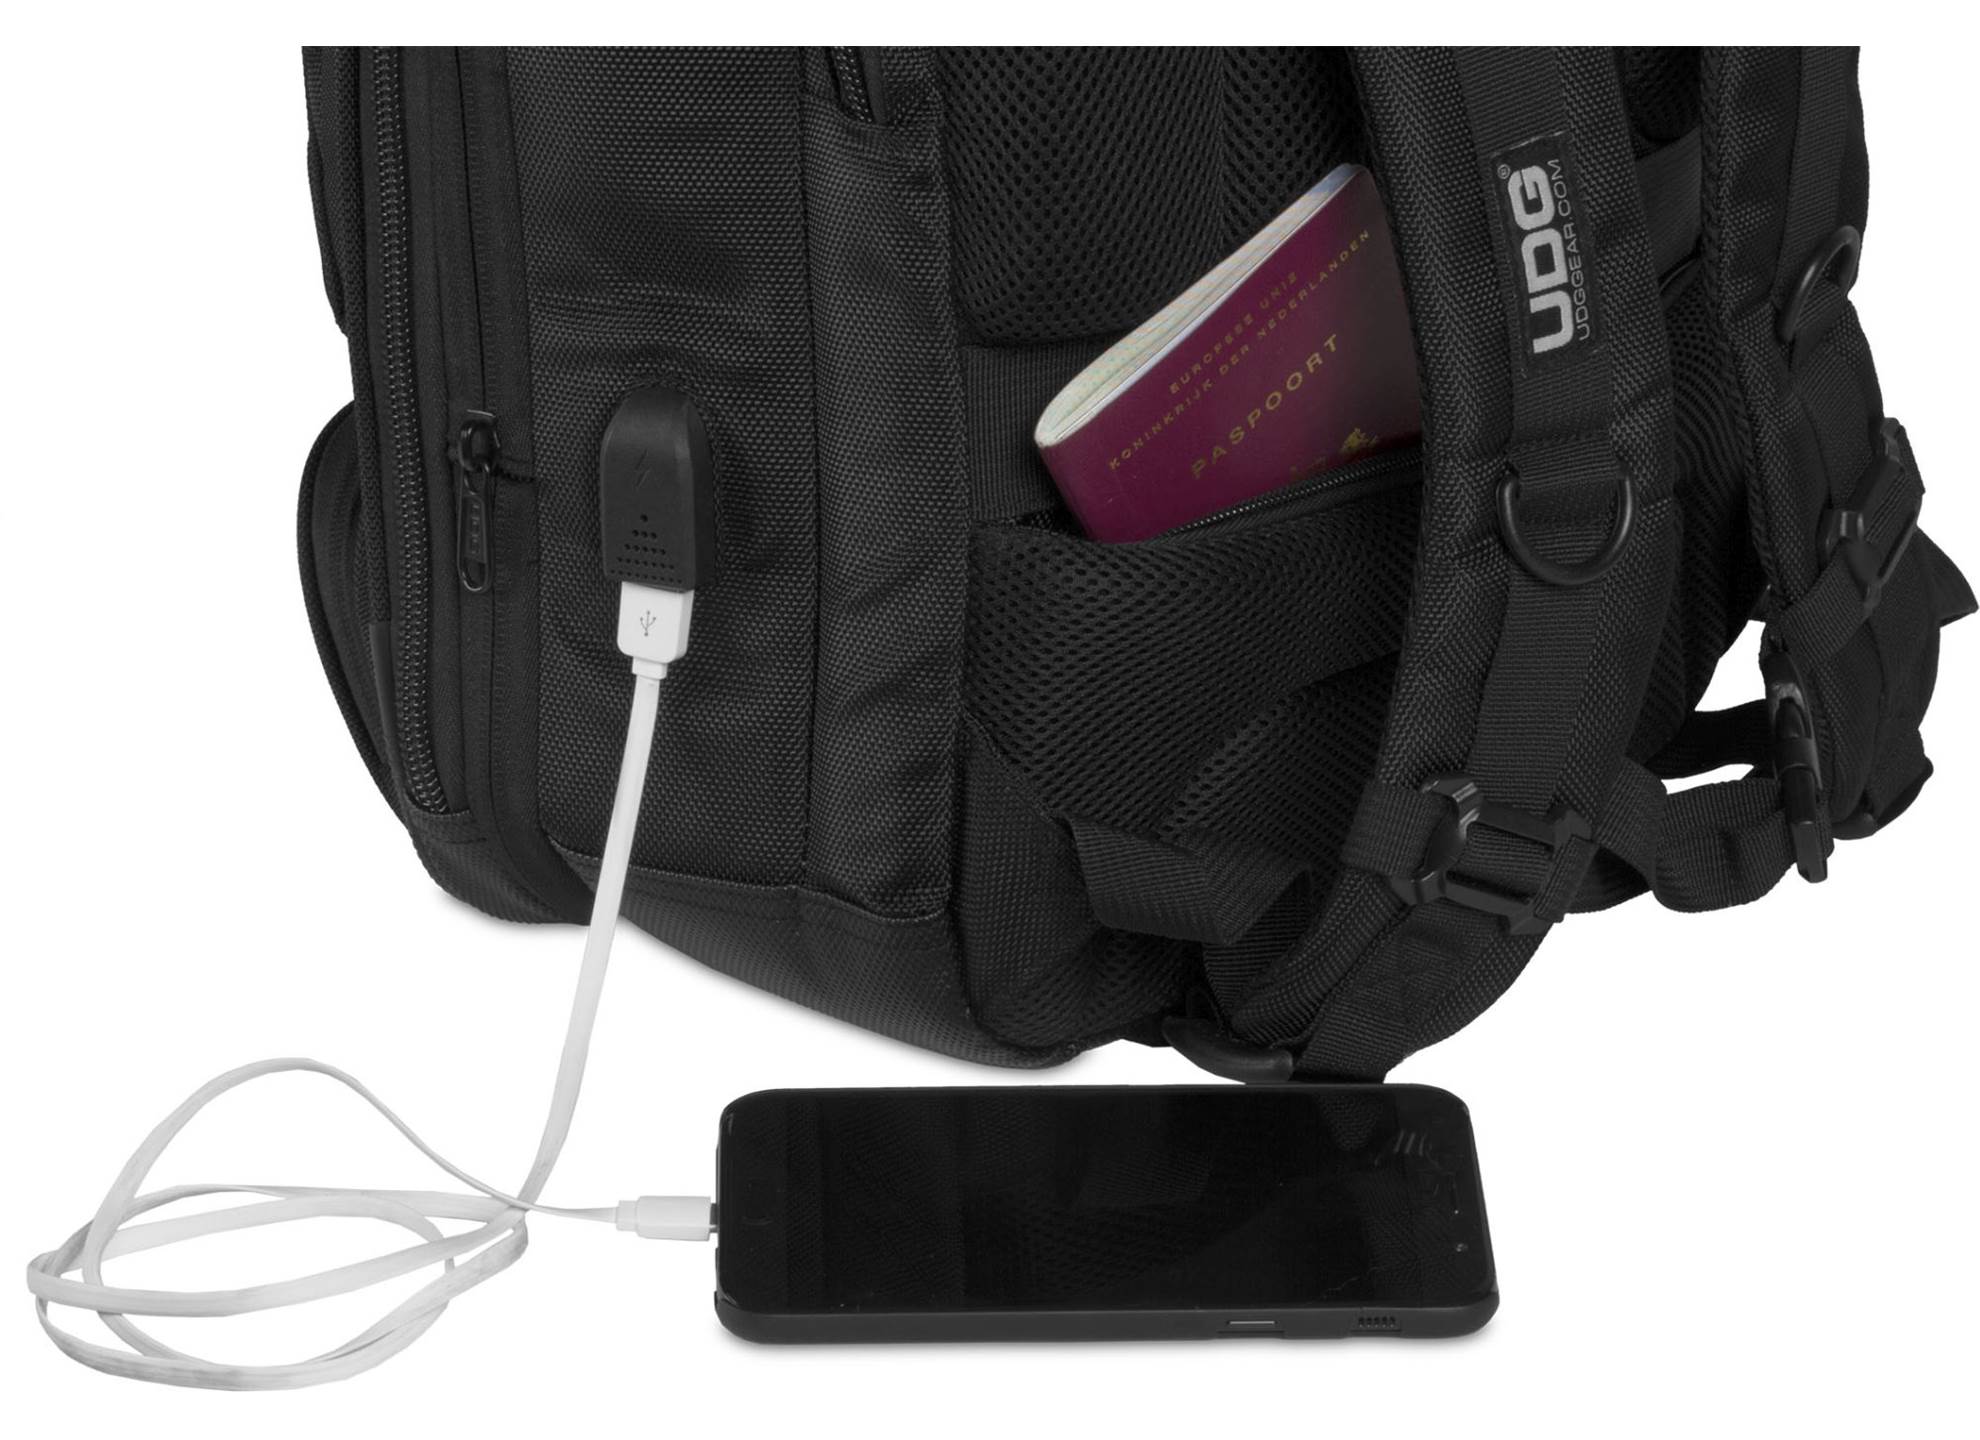 Ultimate Backpack Slim